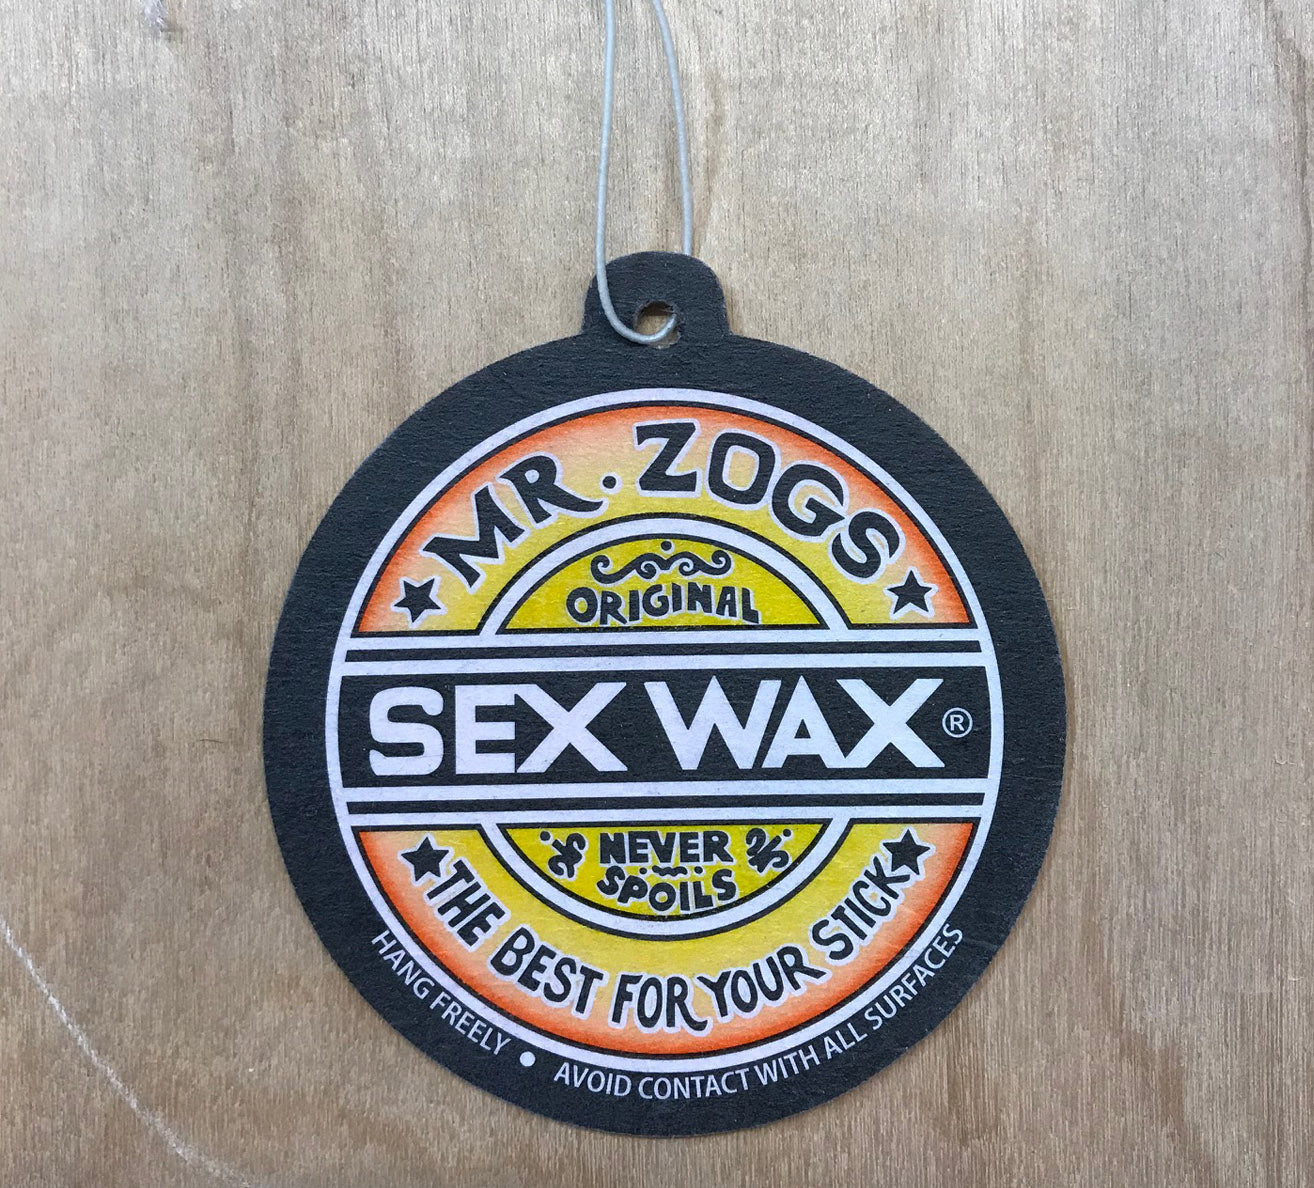 Mr Zoggs Sex Wax Air Car Air Freshener Coconut